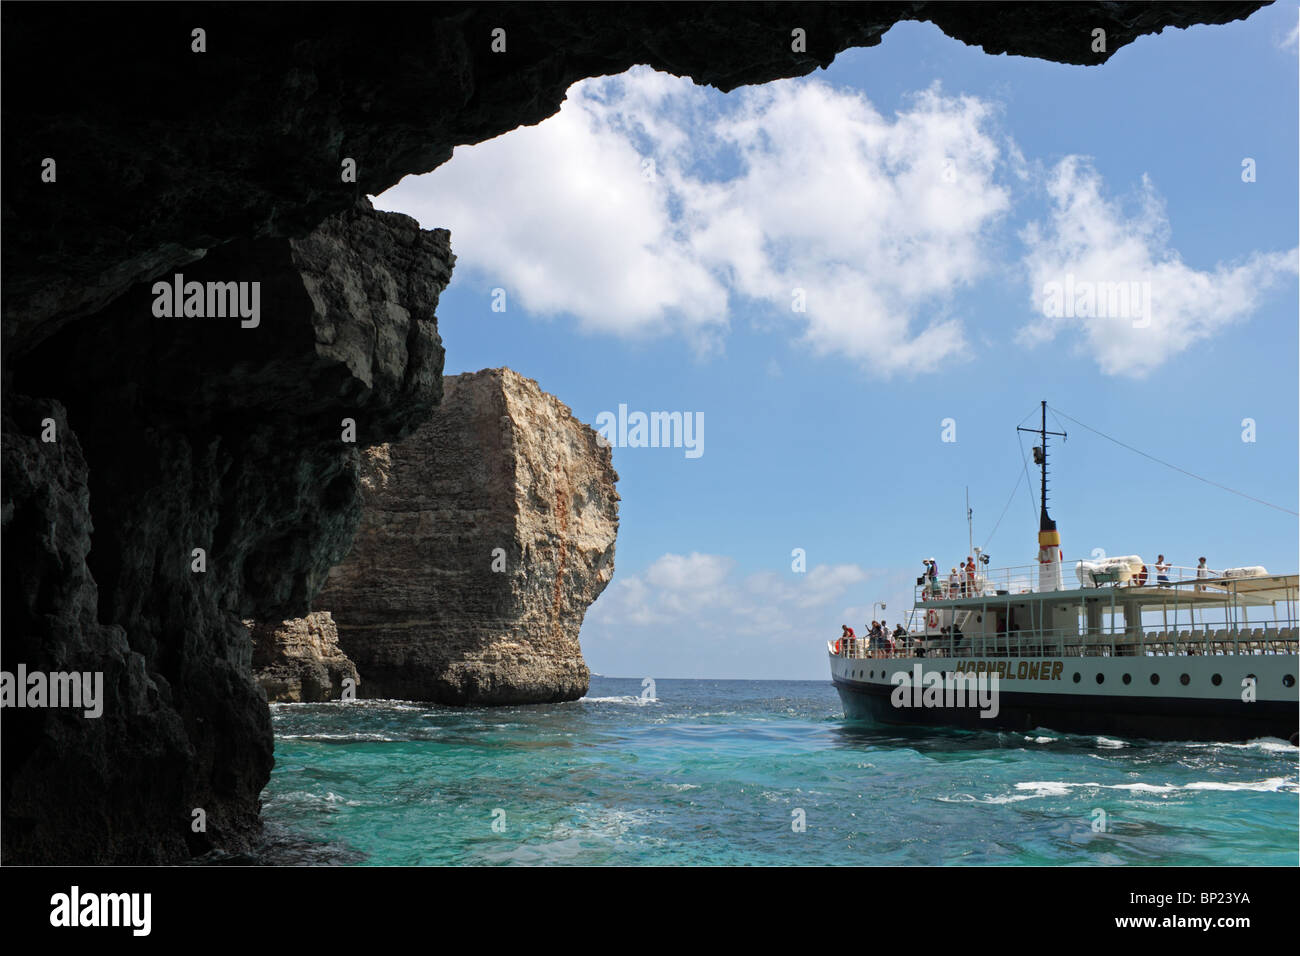 Bateau d'excursion de Hornblower vu de l'intérieur de la grotte des contrebandiers Cove, au-dessous de Marfa Ridge, près de Mellieħa, au nord de Malte, de la Méditerranée, l'Europe Banque D'Images